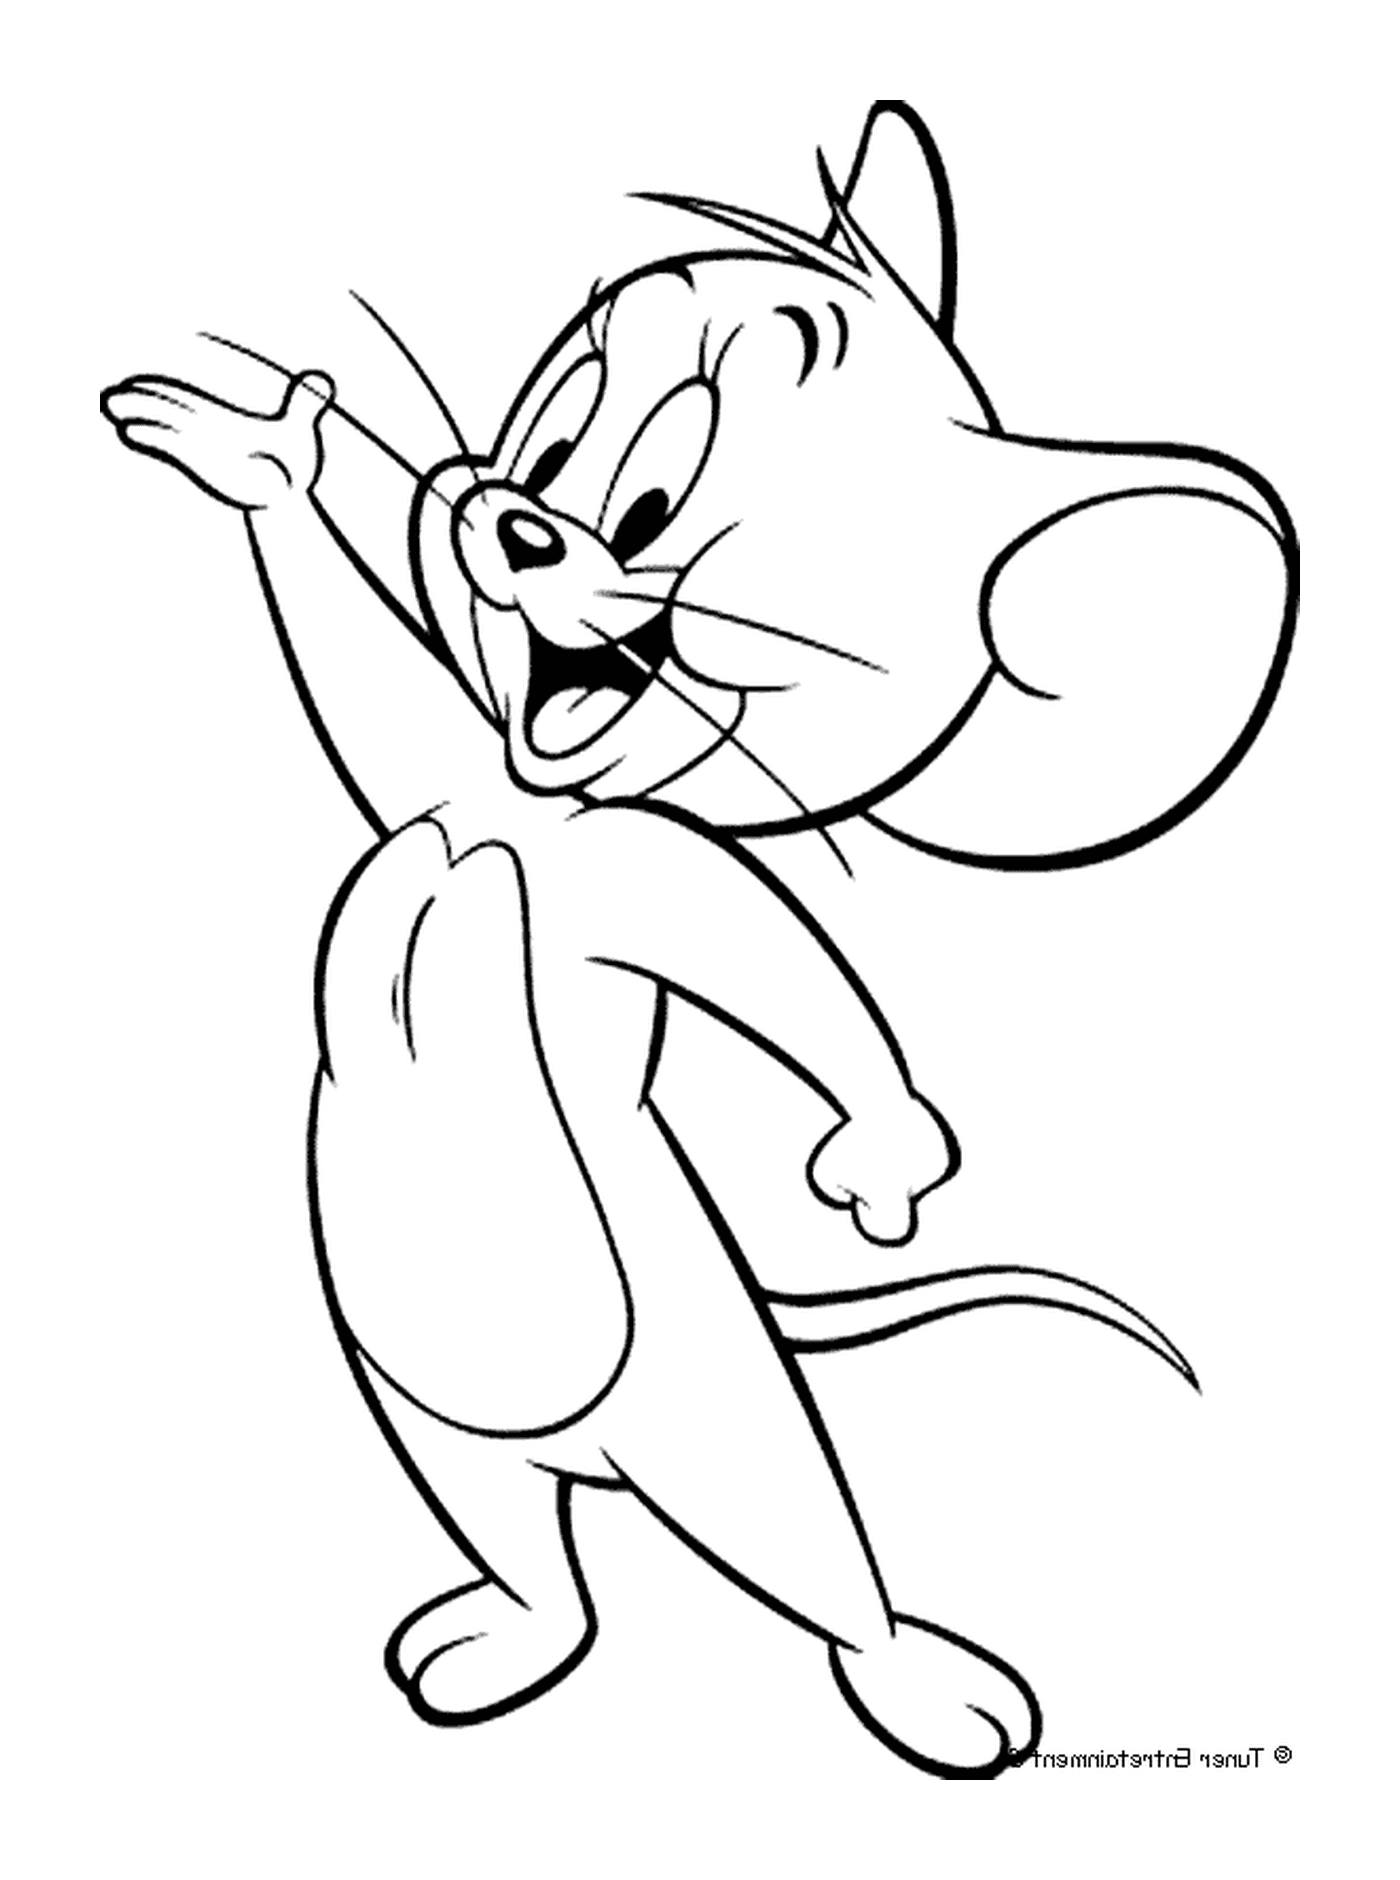  o rato Jerry Jerry o rato 